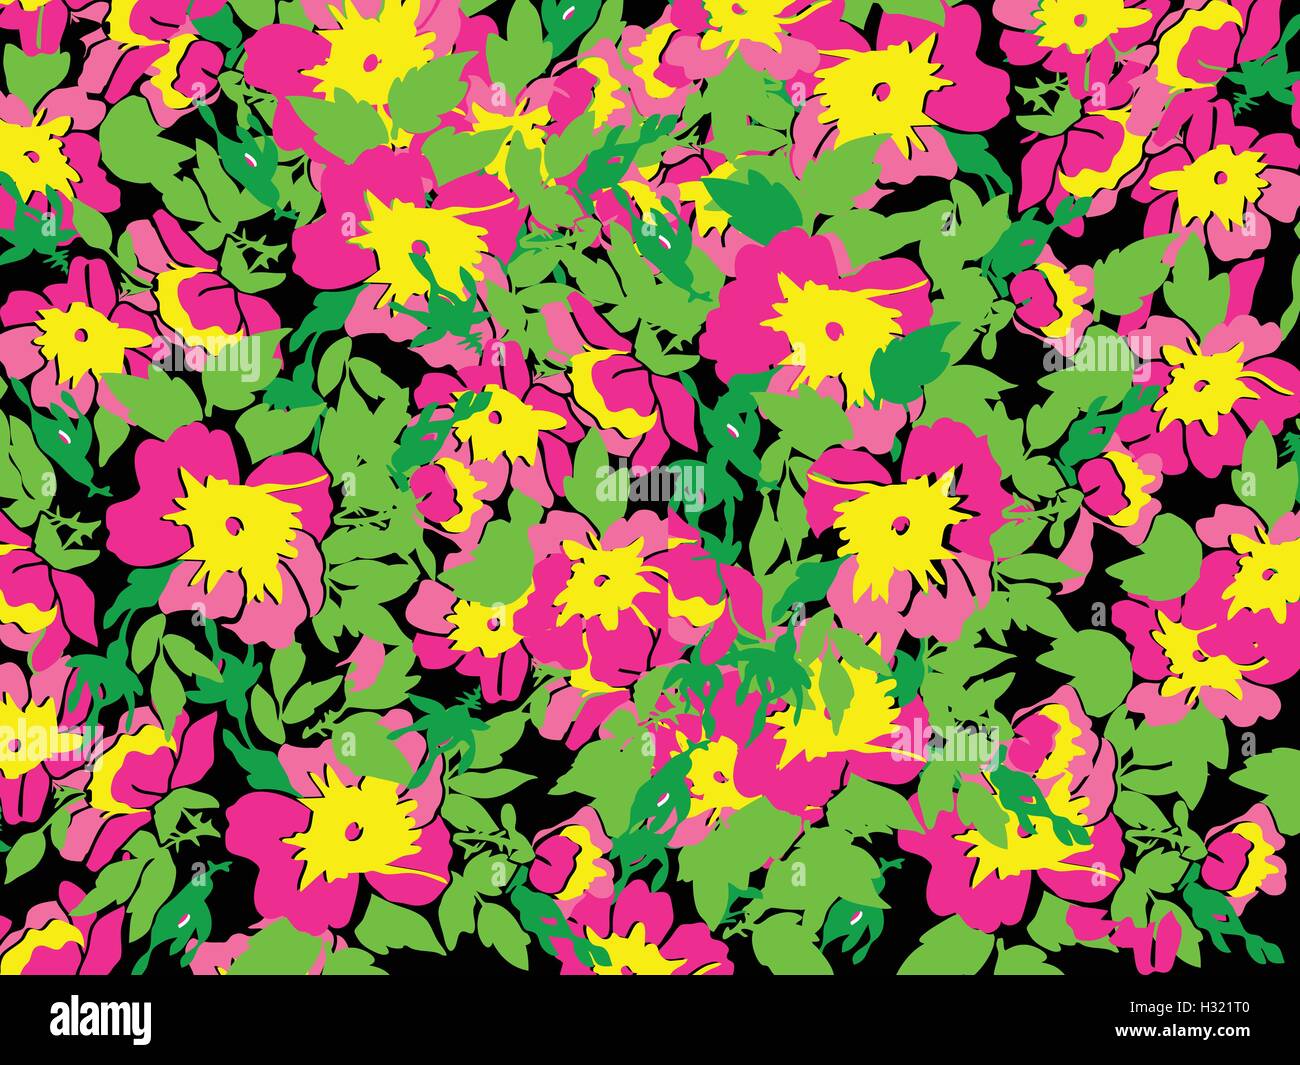 Frühling Sommer Blumen im Vintage Style. Jahreszeiten florales Muster Hintergrund Vektor Stock Vektor